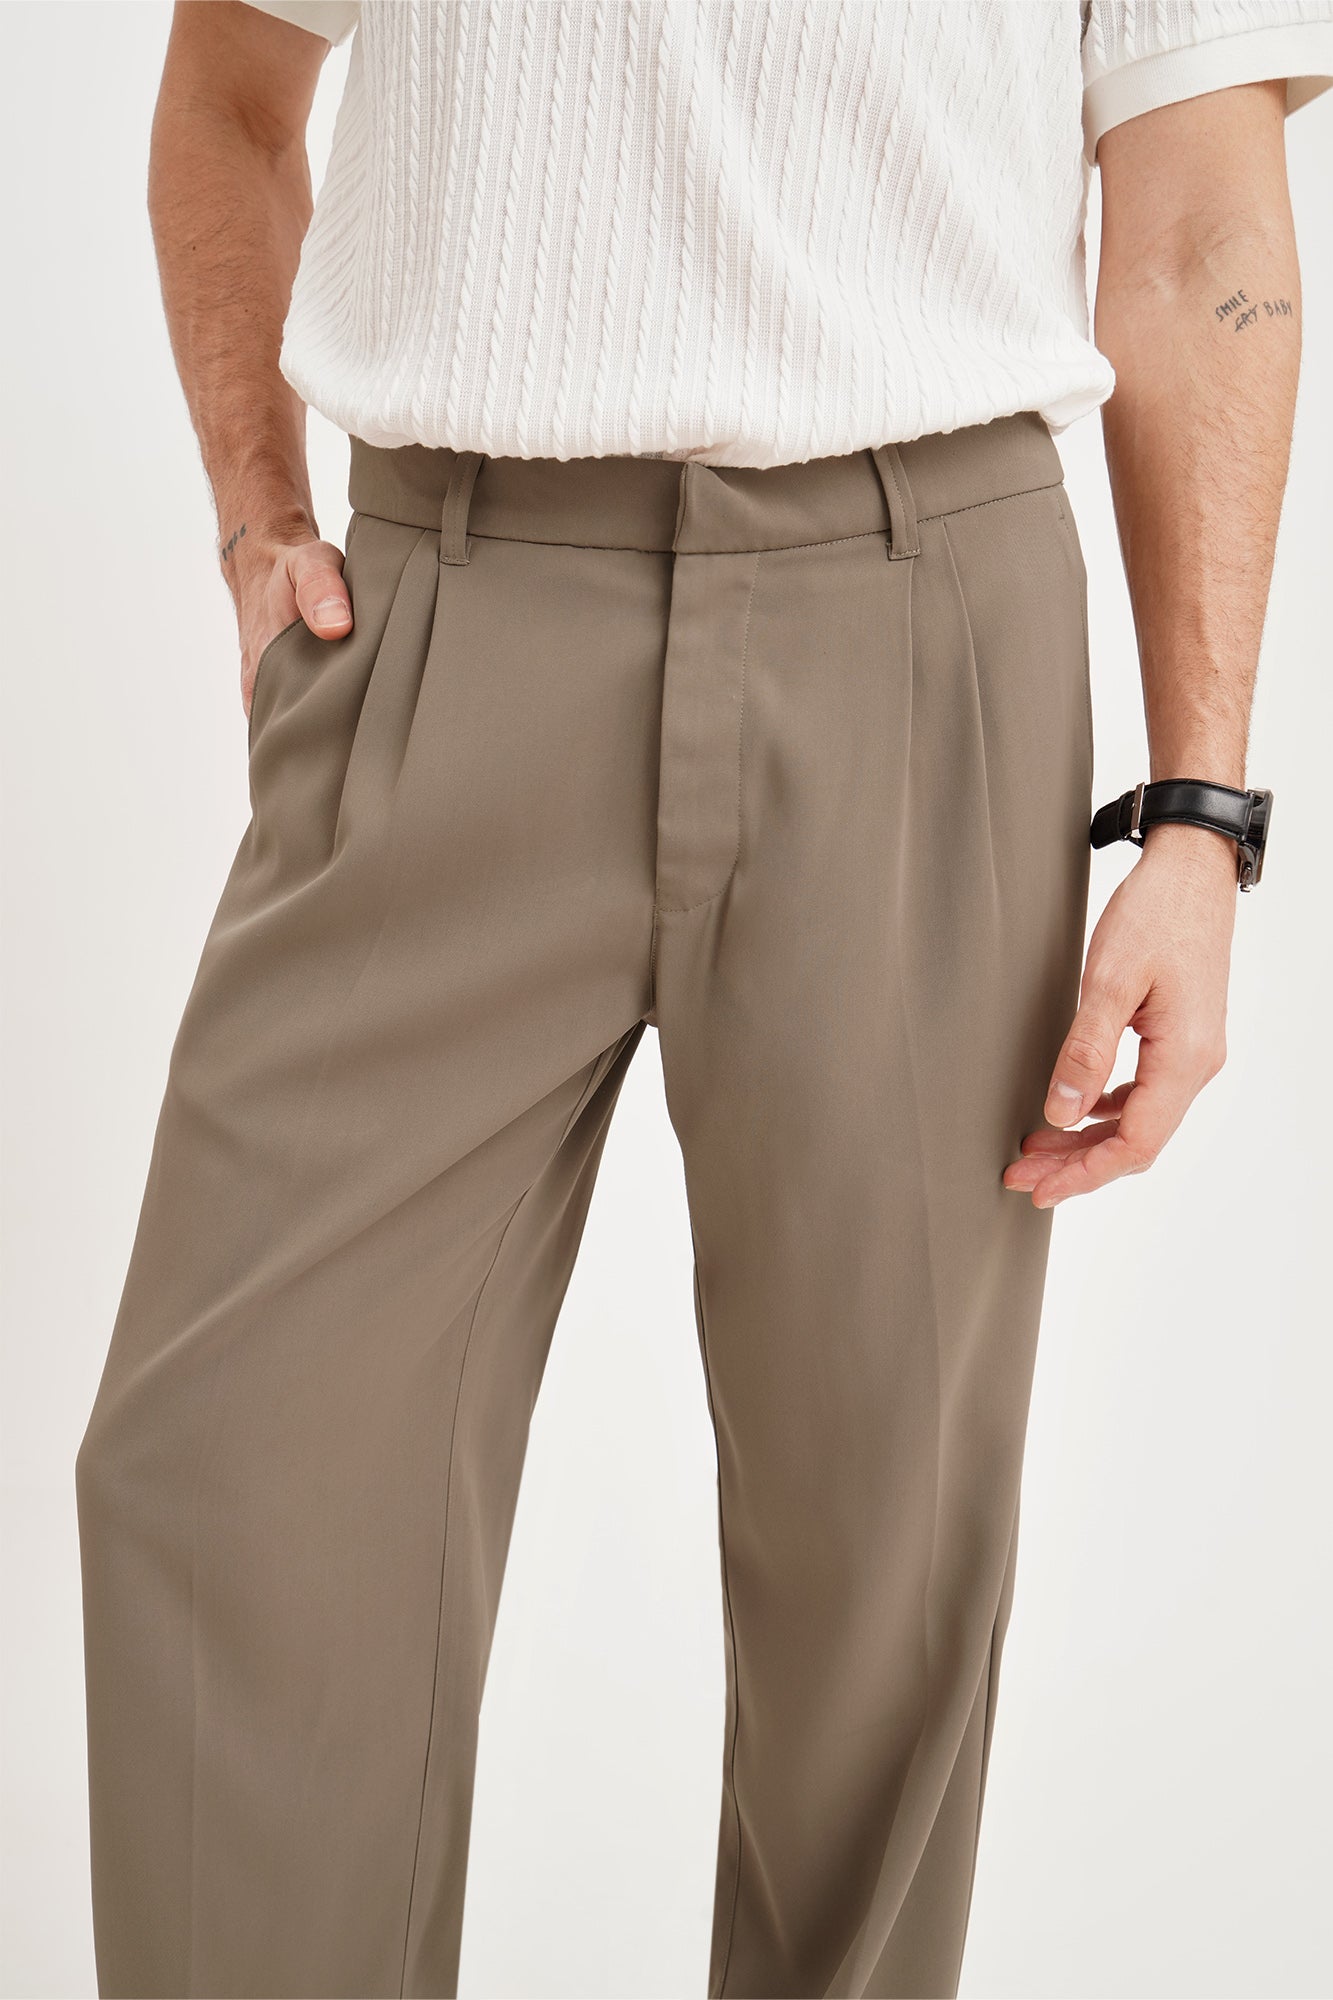 Best mens dress pants for work - Solaroid Energy